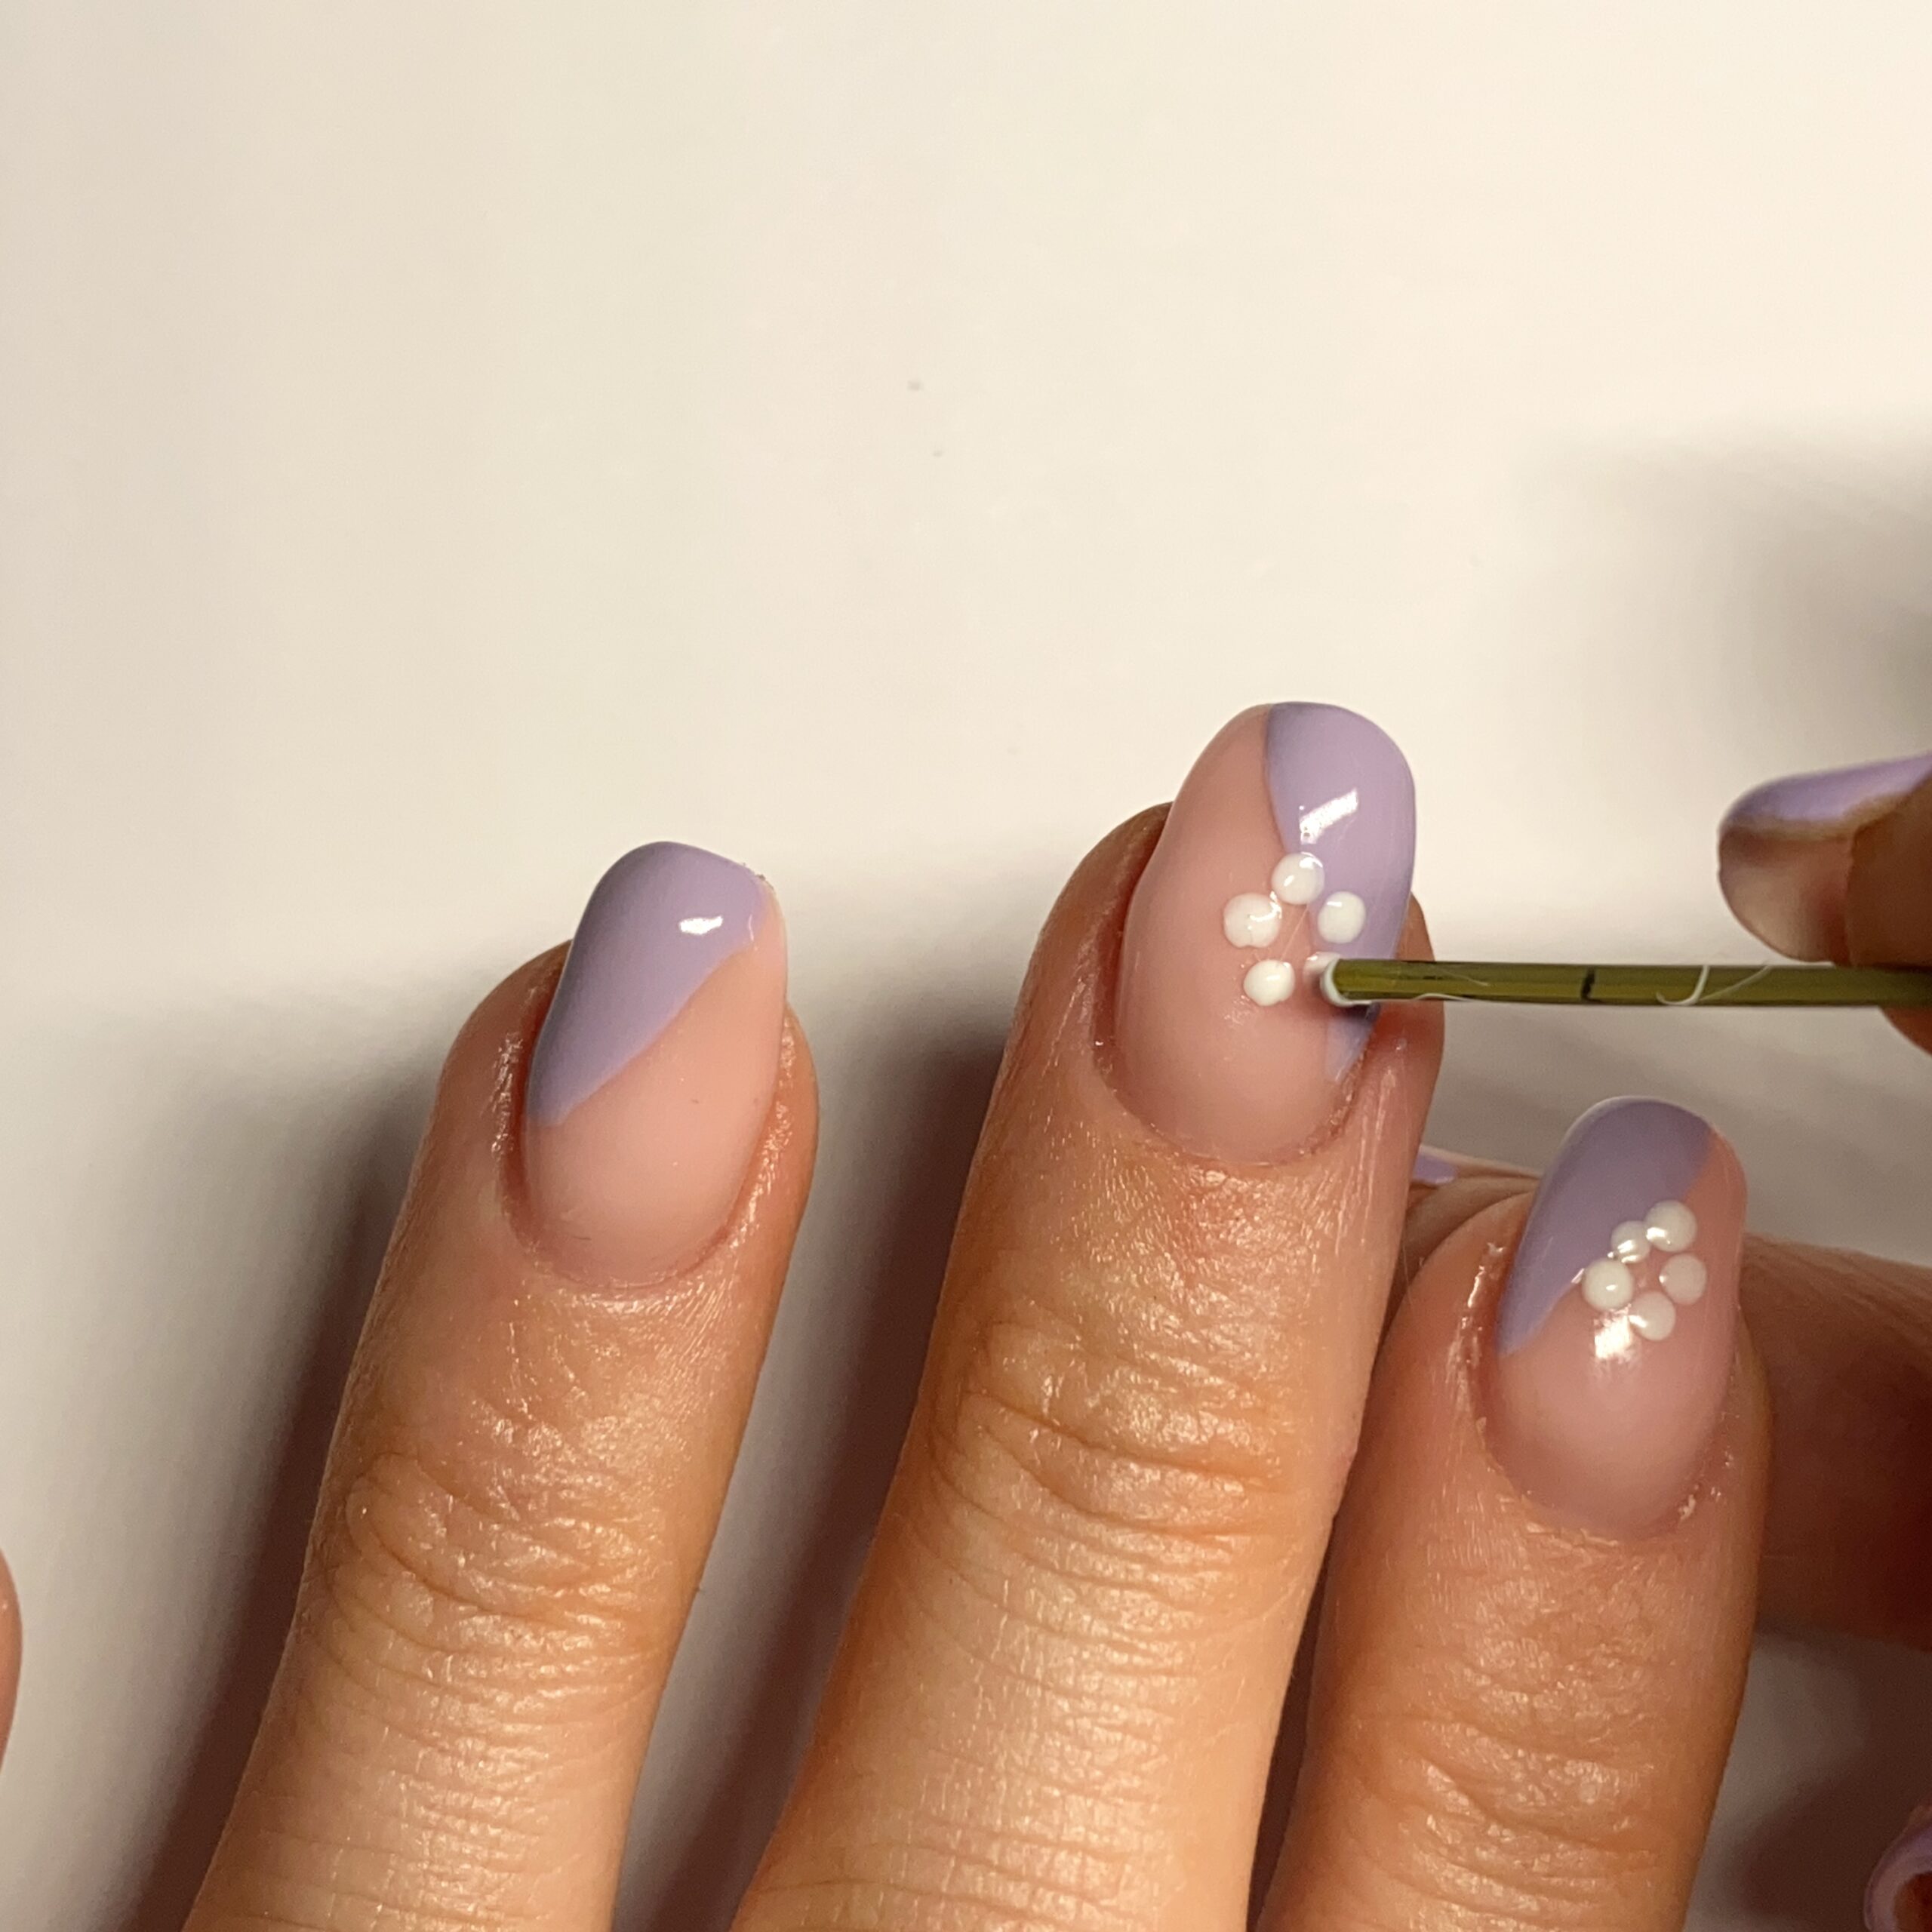 Bạn muốn thực hiện những kiểu nail art màu pastel tại nhà? Không cần đến salon, bạn có thể tự tay làm đẹp móng tay của mình với hướng dẫn đơn giản từ Beauty Bay Edited. Không chỉ dừng lại ở màu pastel, bạn còn có thể thực hiện nhiều kiểu nail art khác nhau với những màu sắc và chất liệu khác nhau. Hãy khám phá ngay!